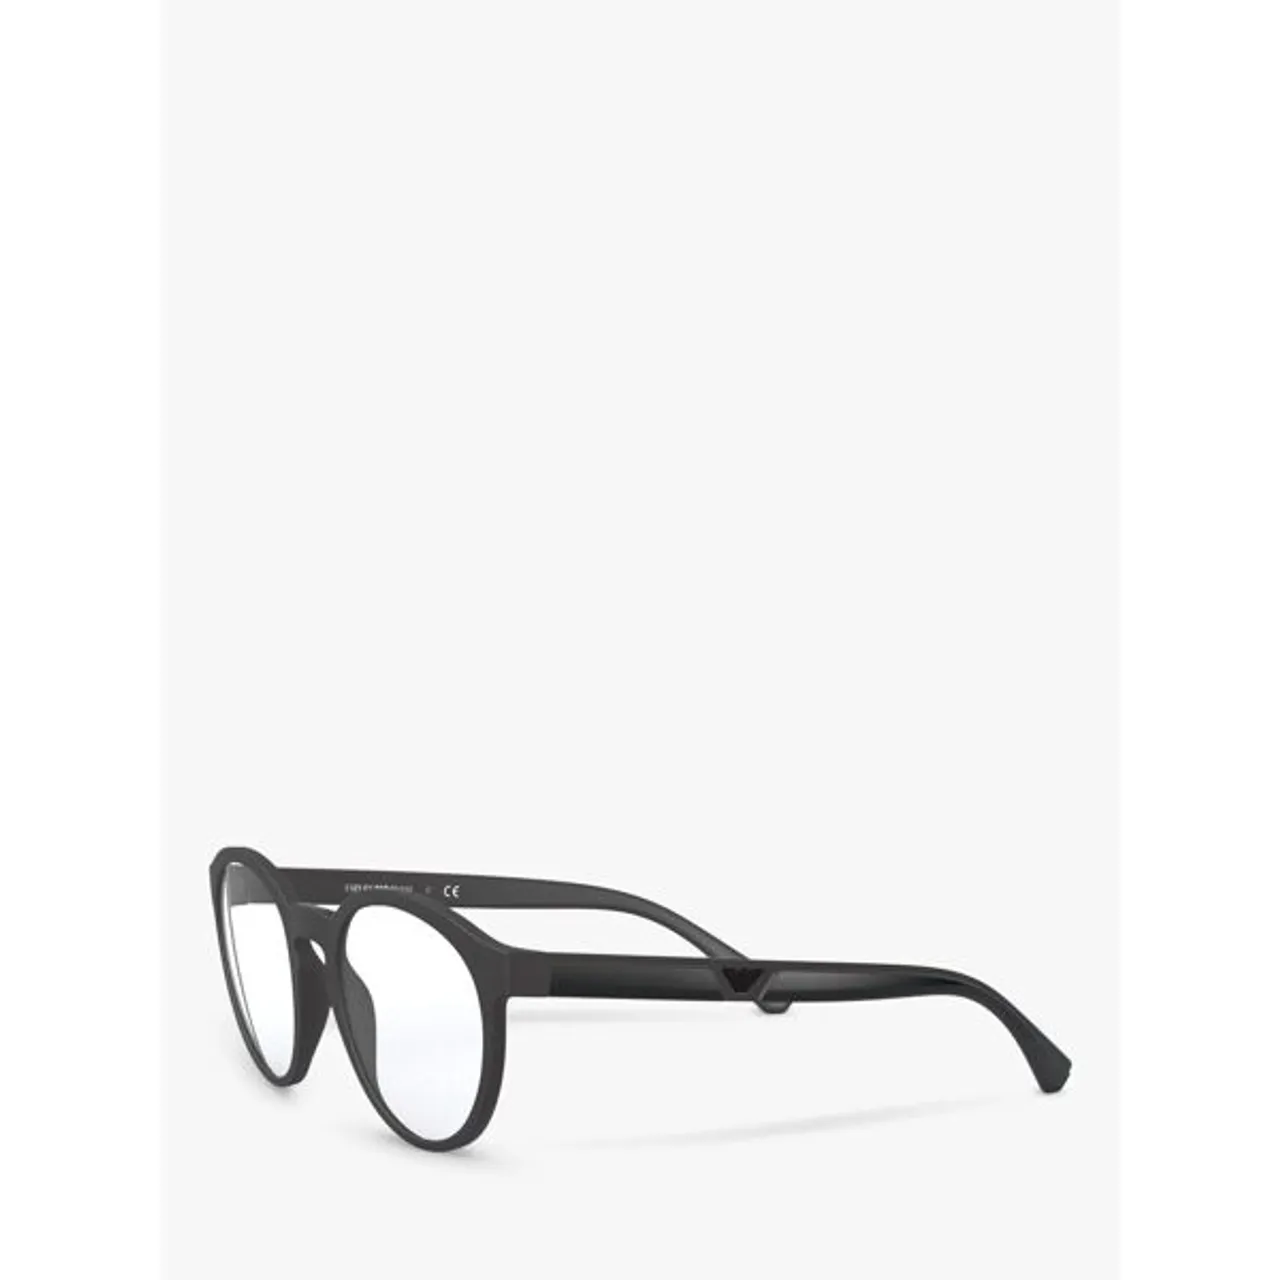 Emporio Armani Men's Oval Sunglasses - Matte Black/Clear - Male